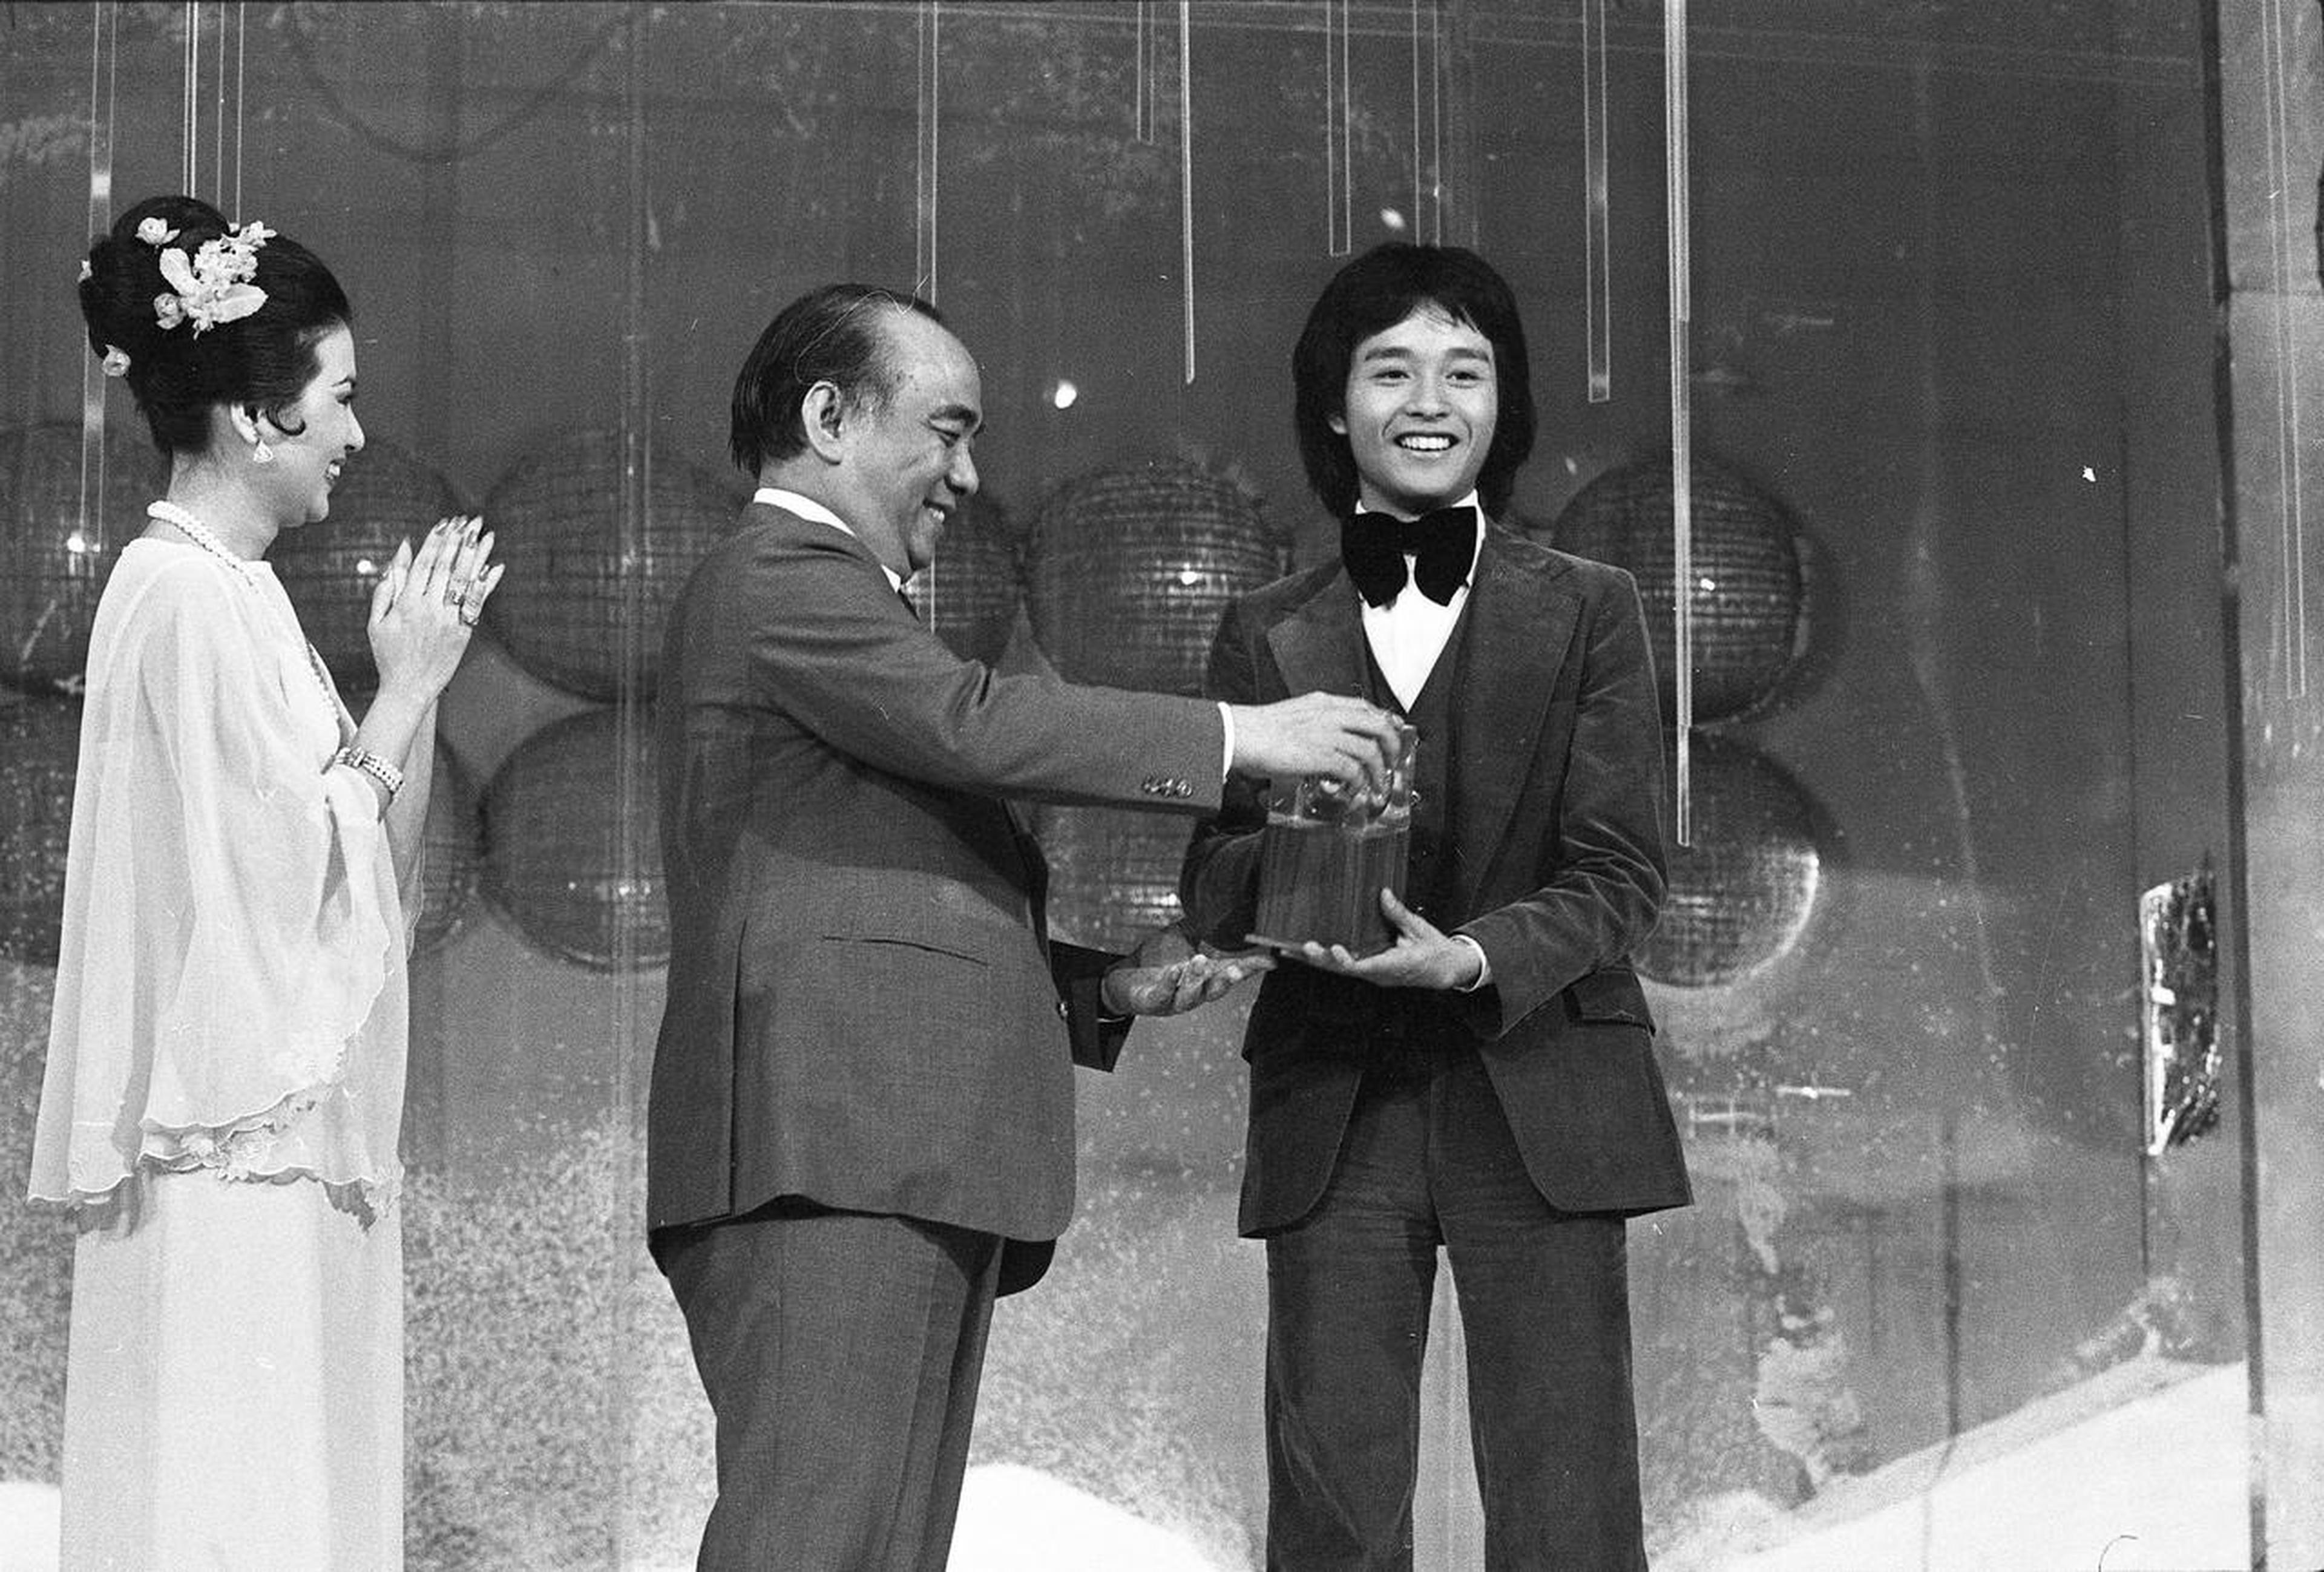 张国荣第一次出道的珍贵影像。1977年5月，年仅 21 岁的张国荣以一曲《American Pie》荣获“电视亚洲歌唱大赛”的亚军。不久后， 他便签约丽的电视(后来的香港亚视)，正式走上演艺之路。